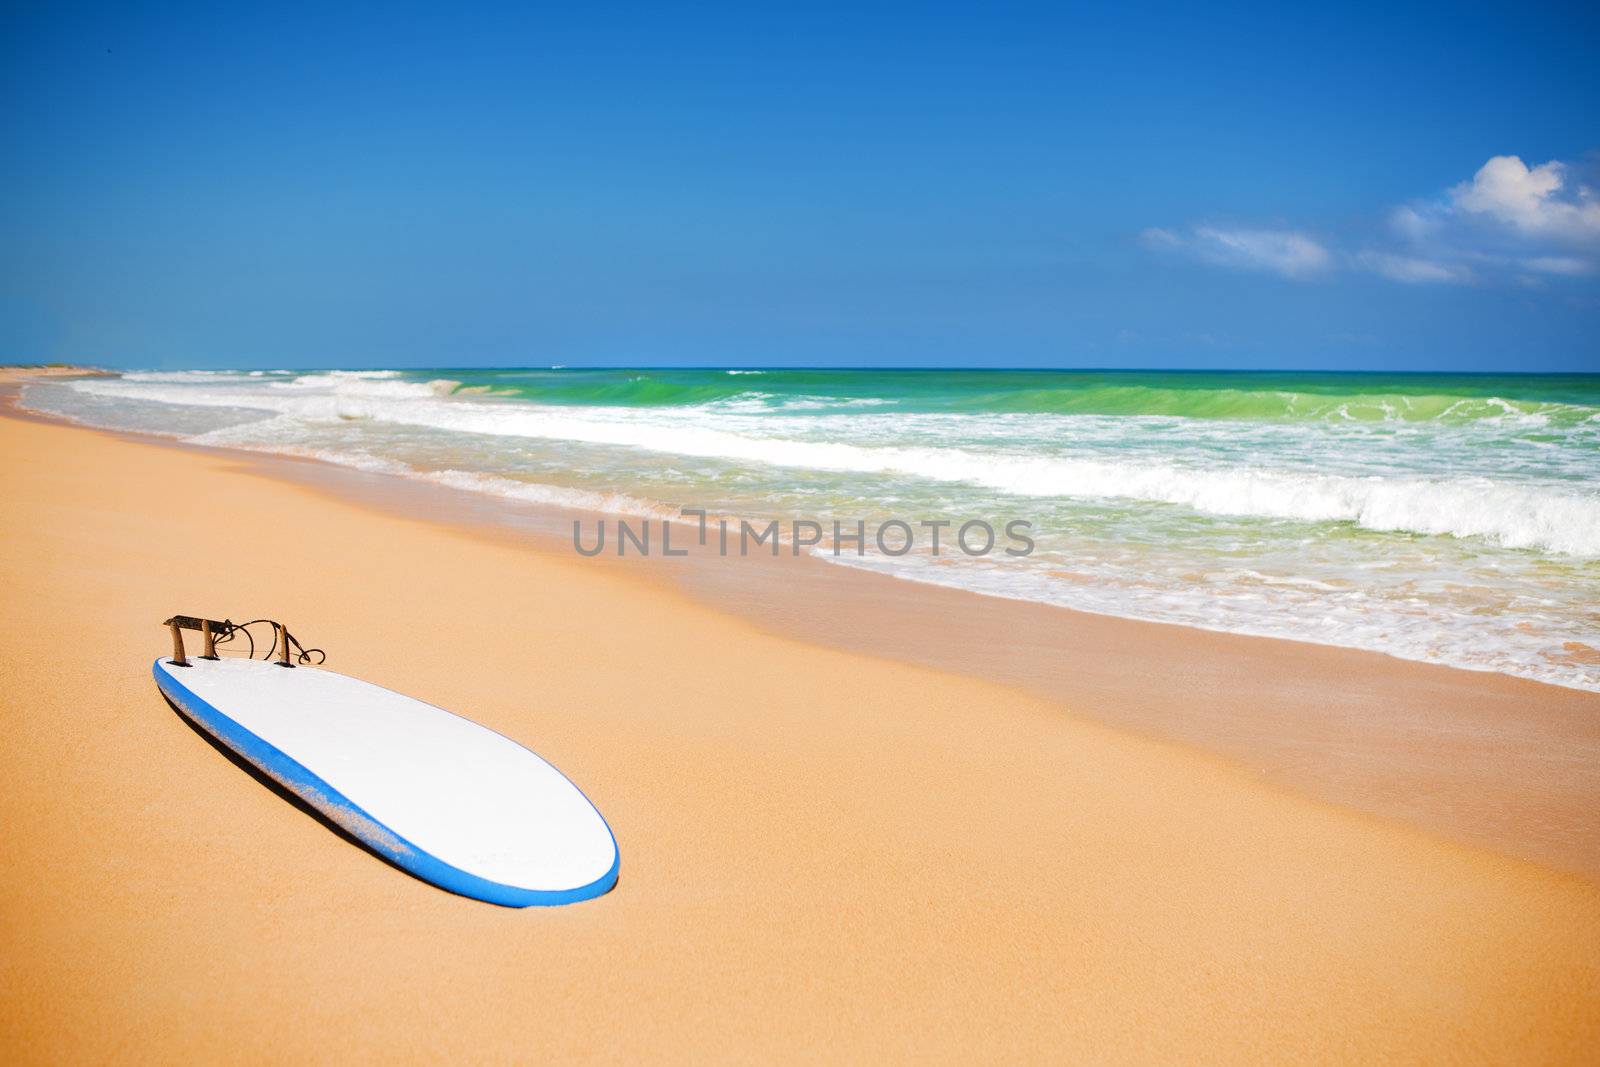 Surfboard on a sandy beach by mihhailov